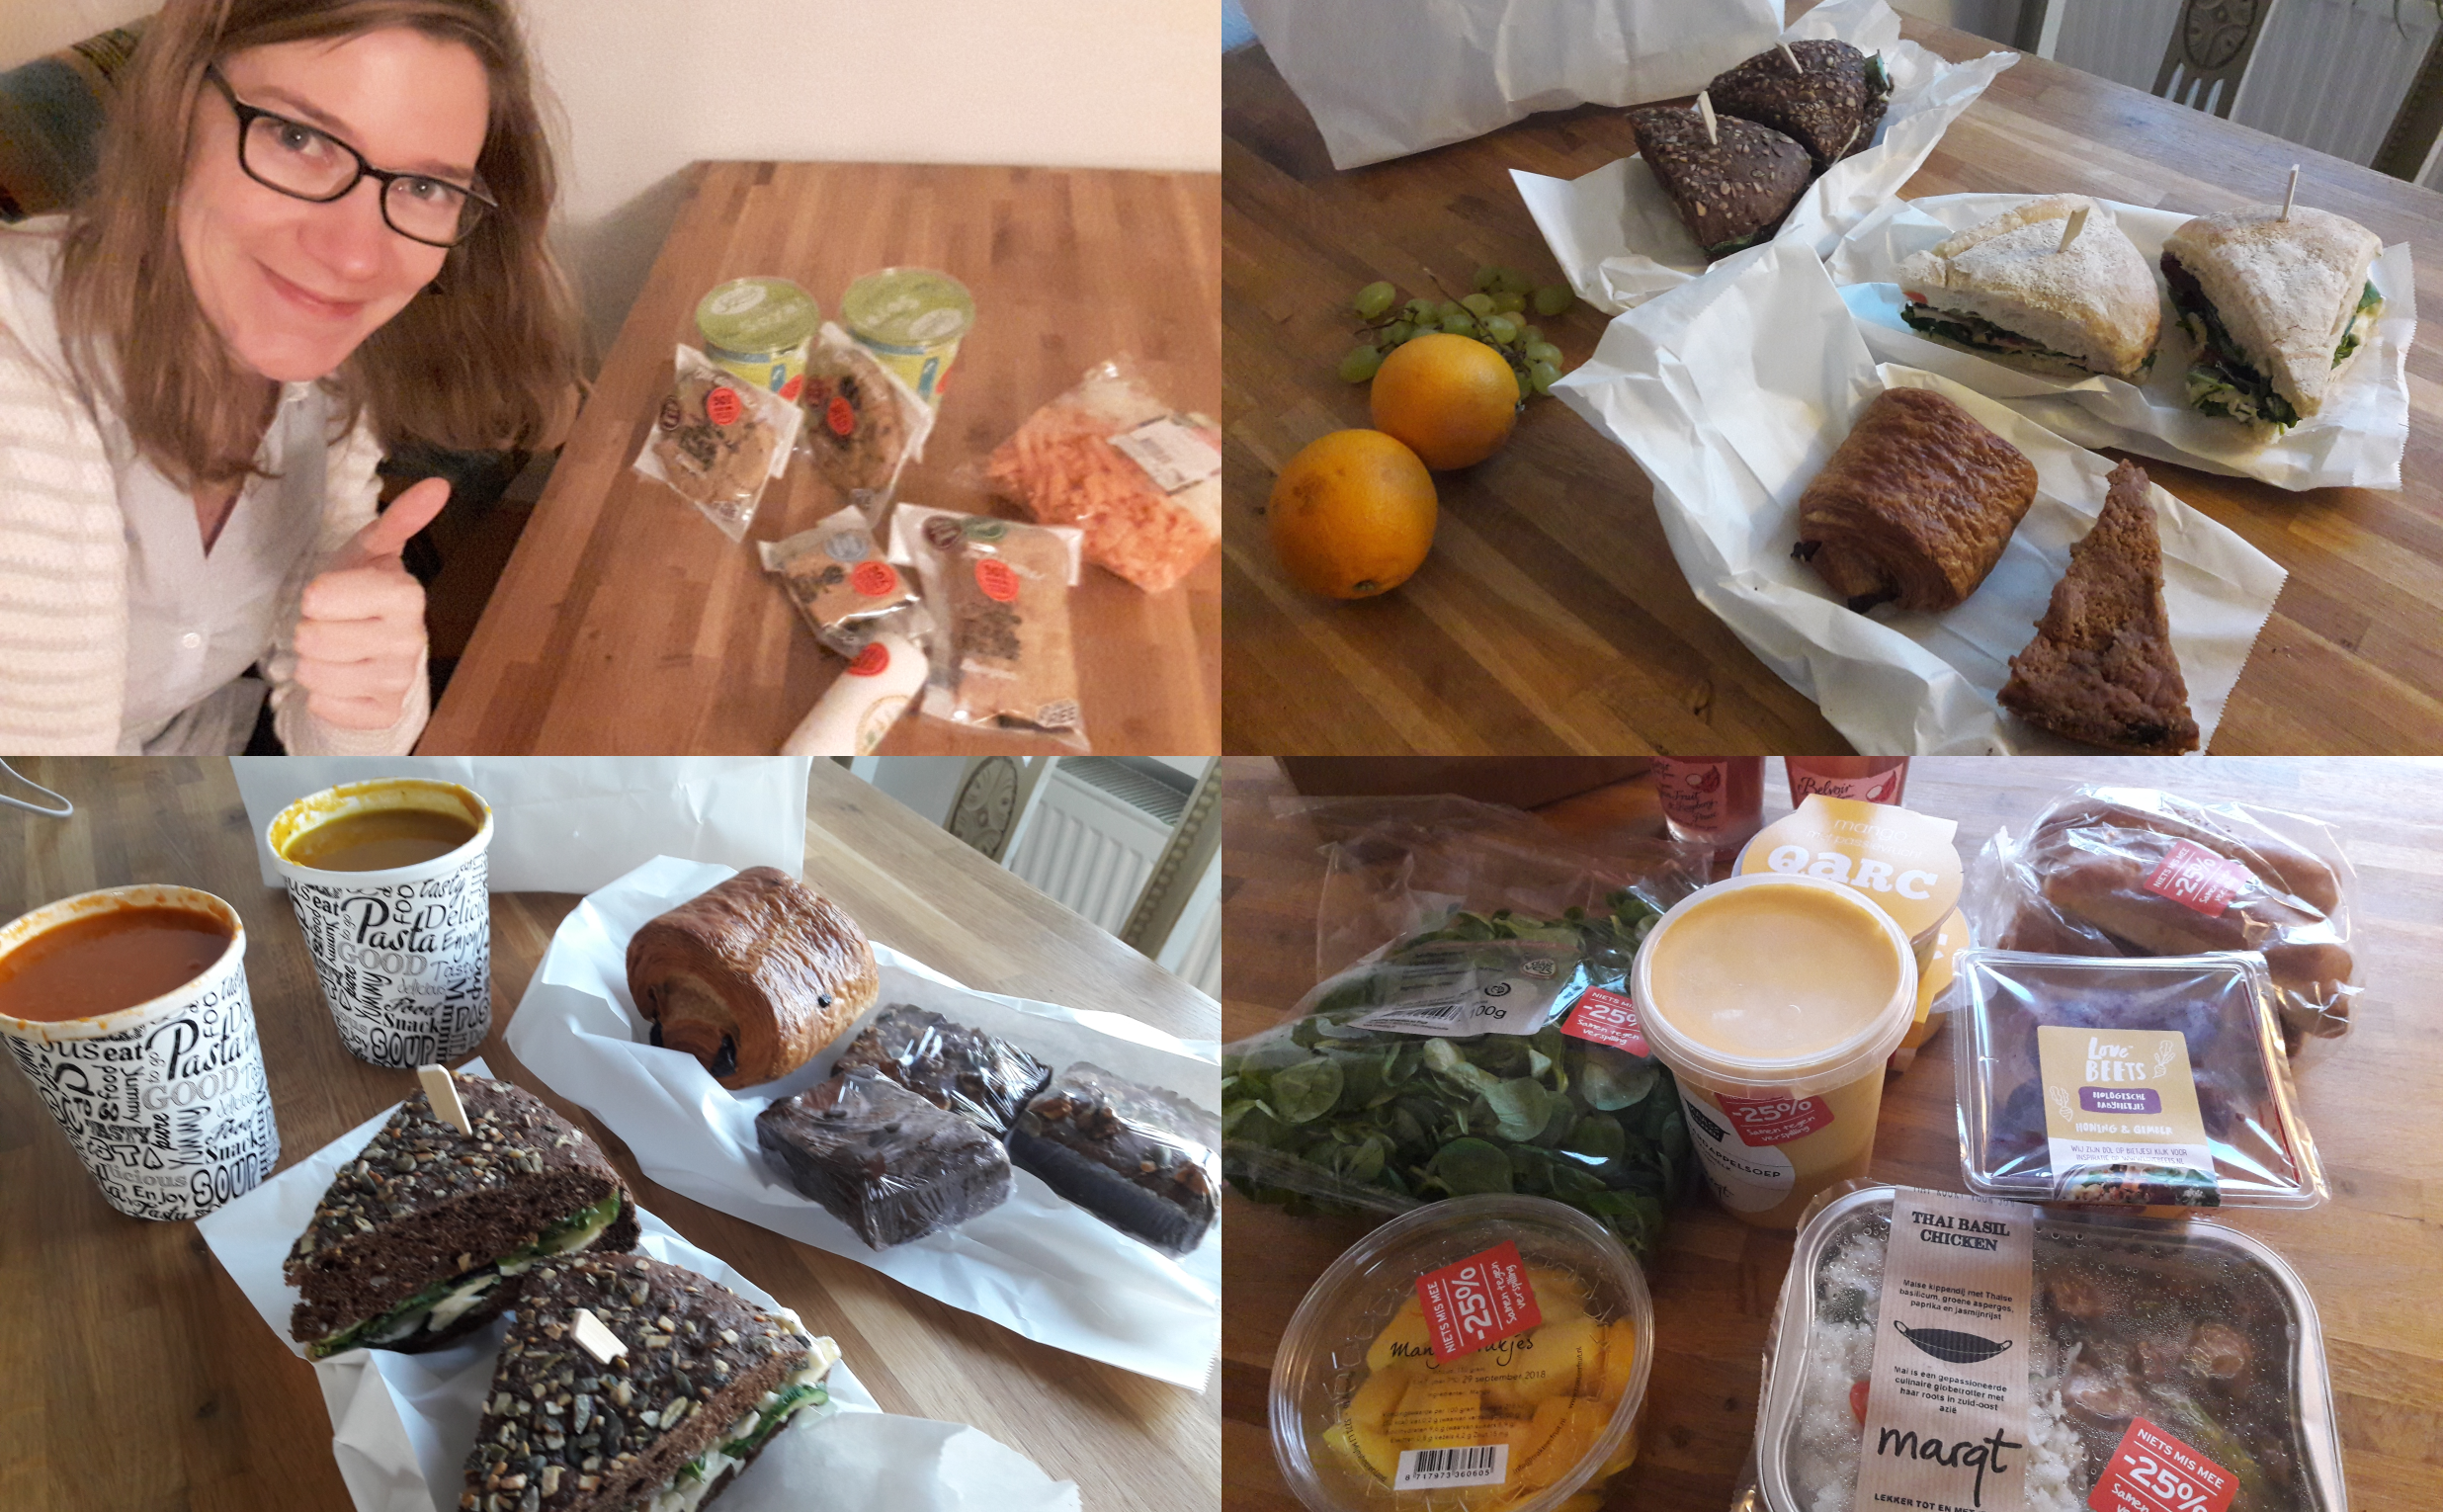 Over voedselverspilling en mijn ervaring met ‘Too Good To Go’